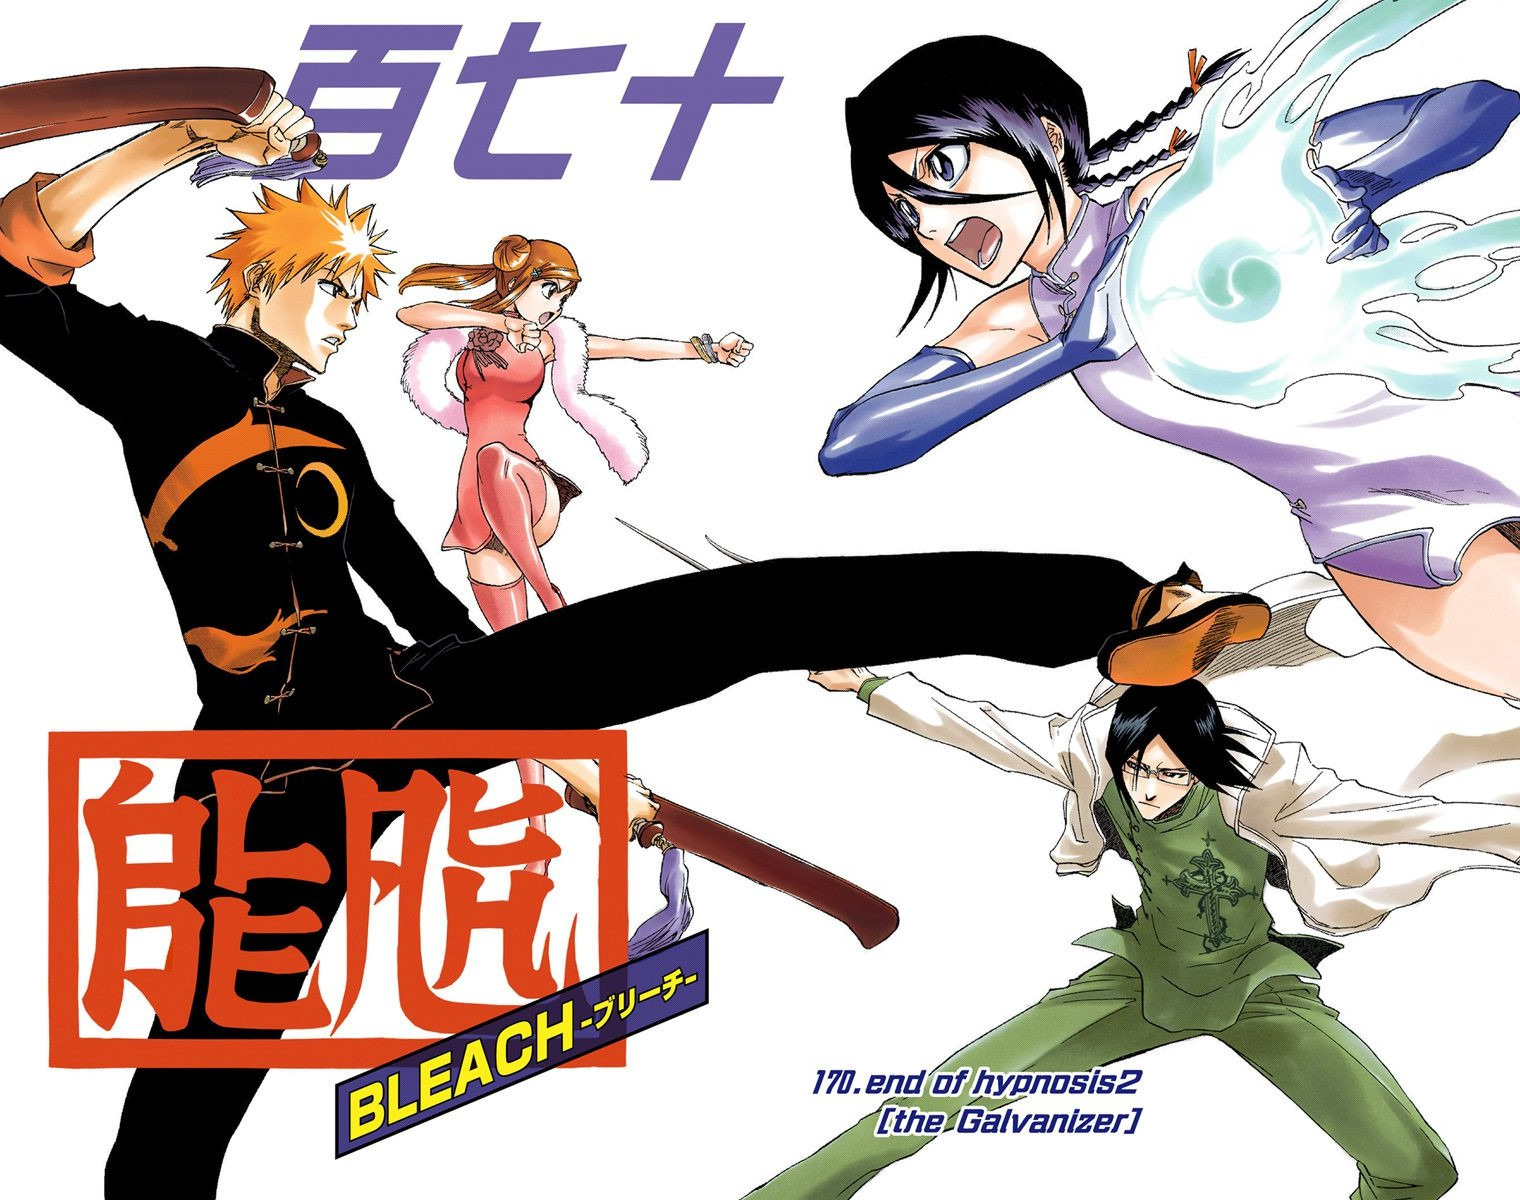 Bleach - Digital Colored Comics - Chapter 165  Bleach manga, Bleach anime  art, Bleach anime ichigo